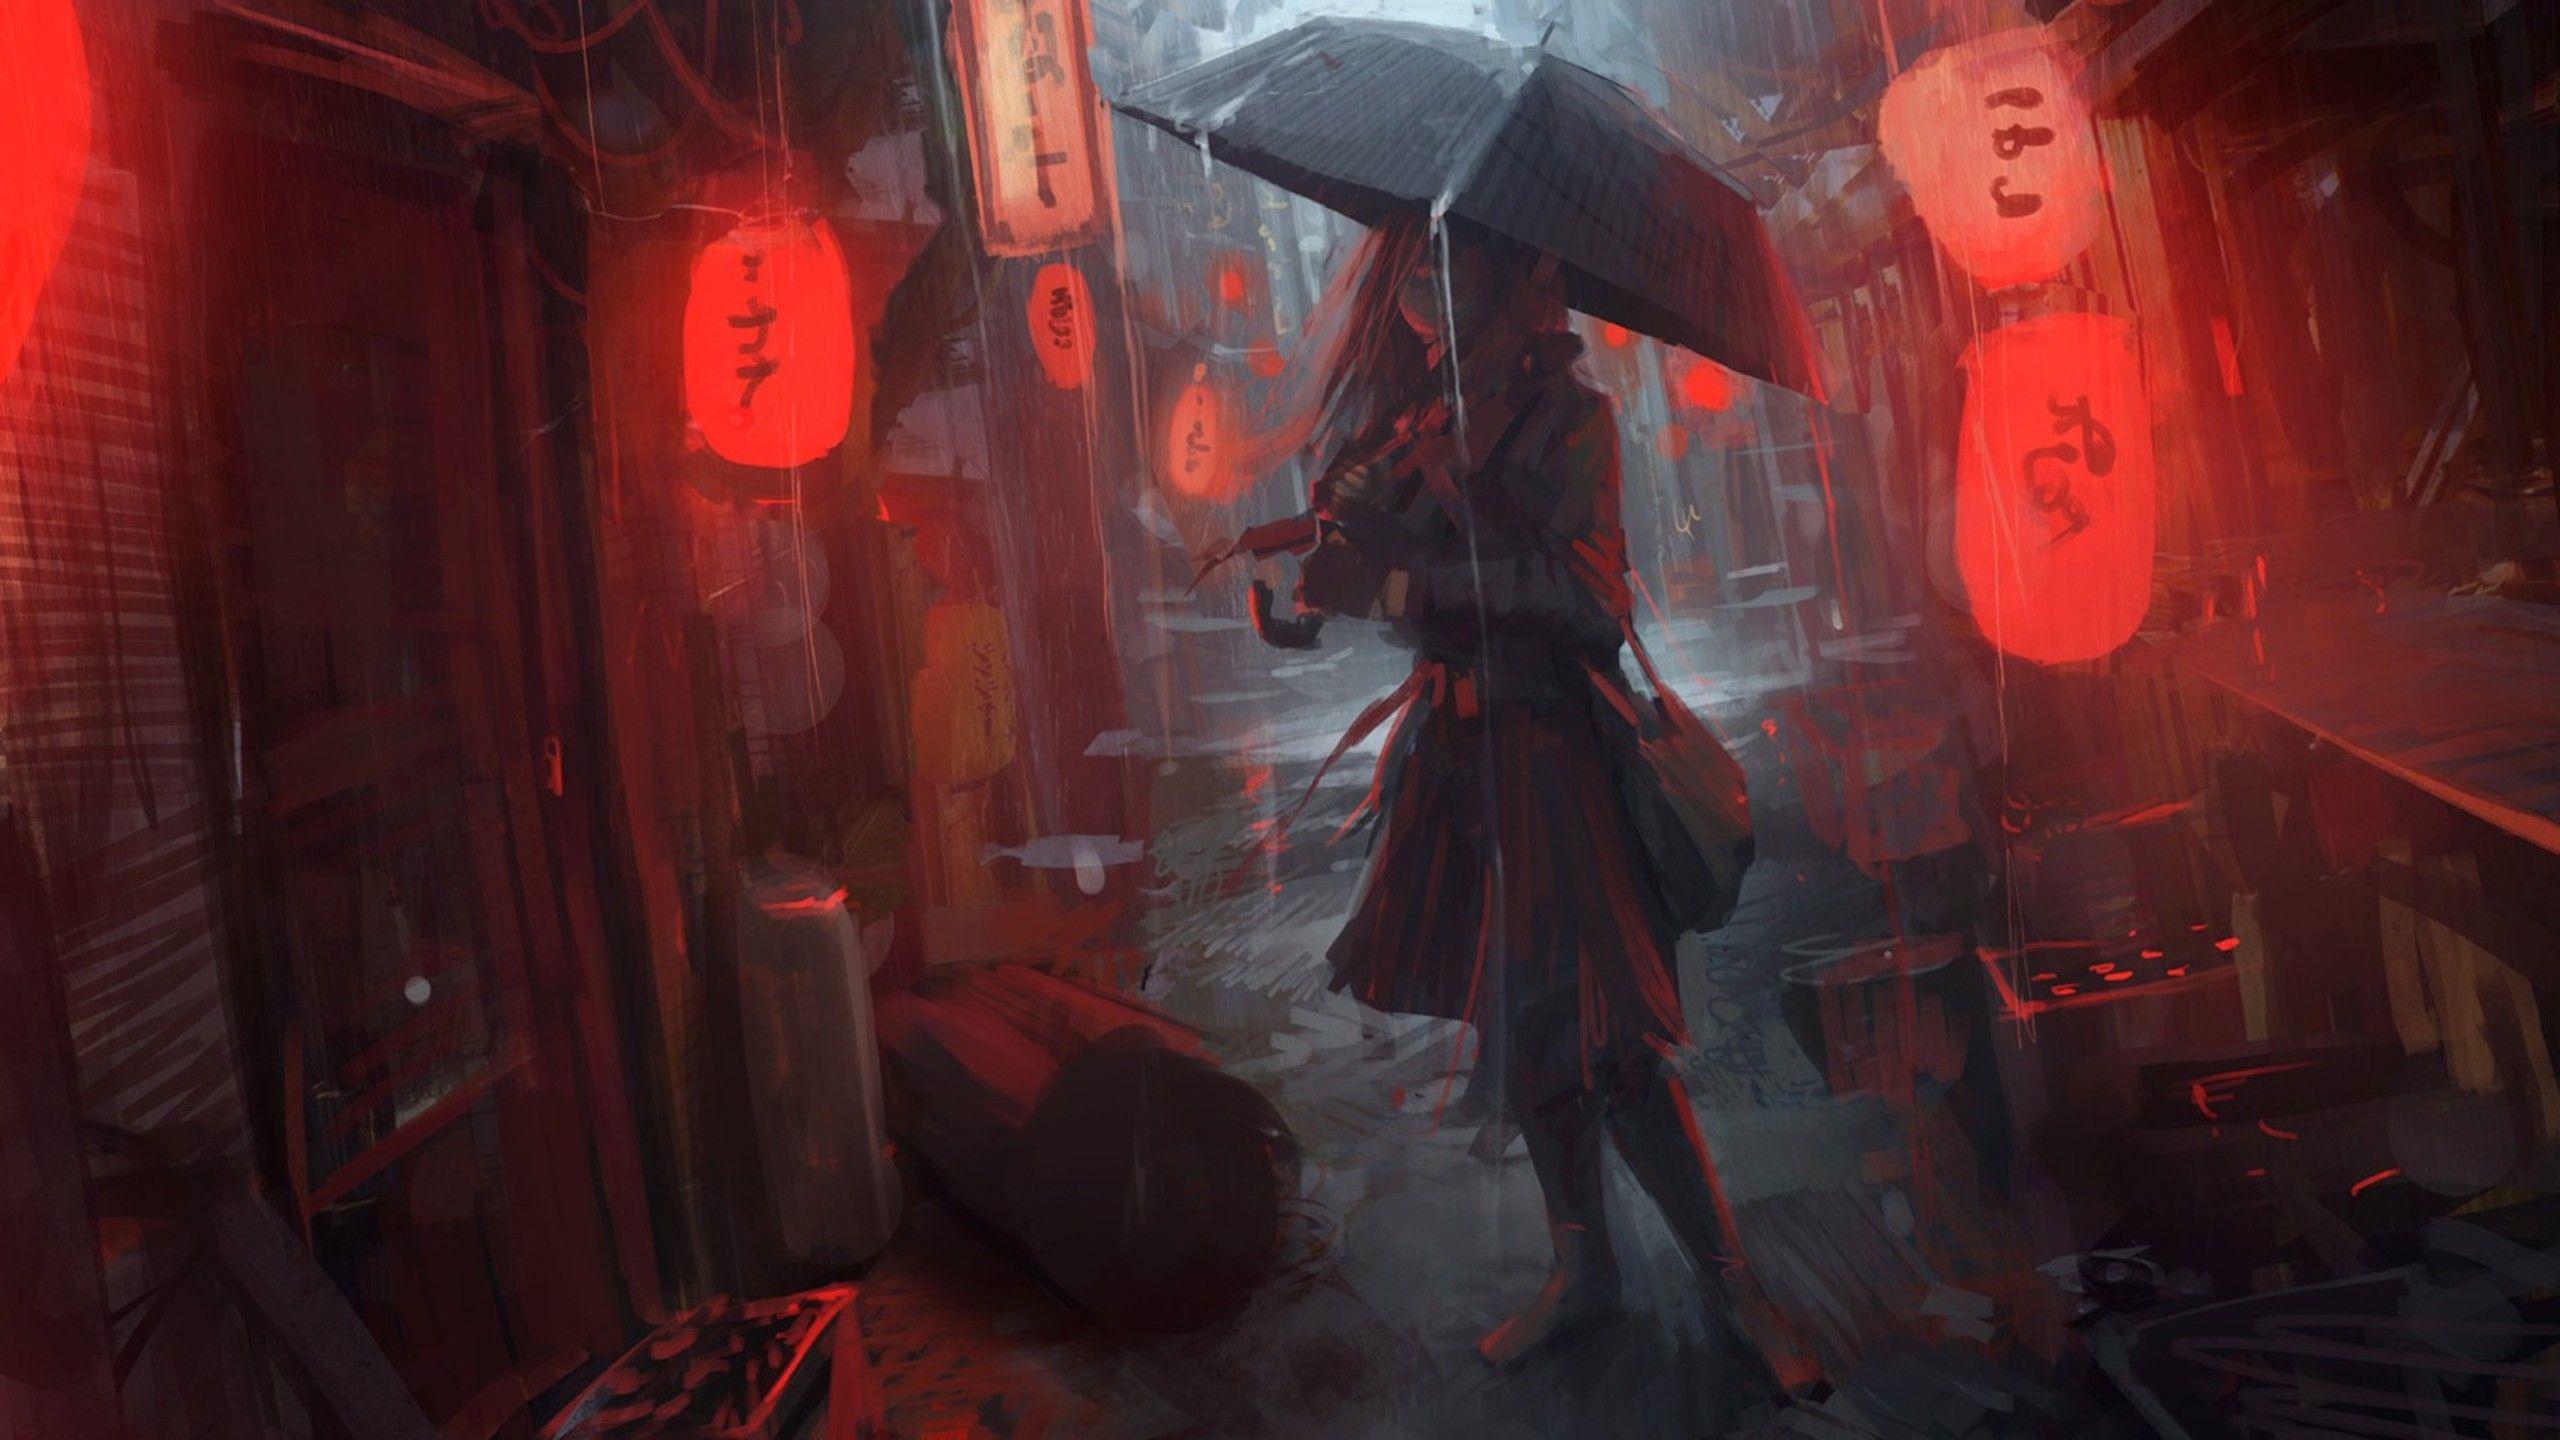 Anime Girl In Rain, HD Anime, 4k Wallpaper, Image, Background